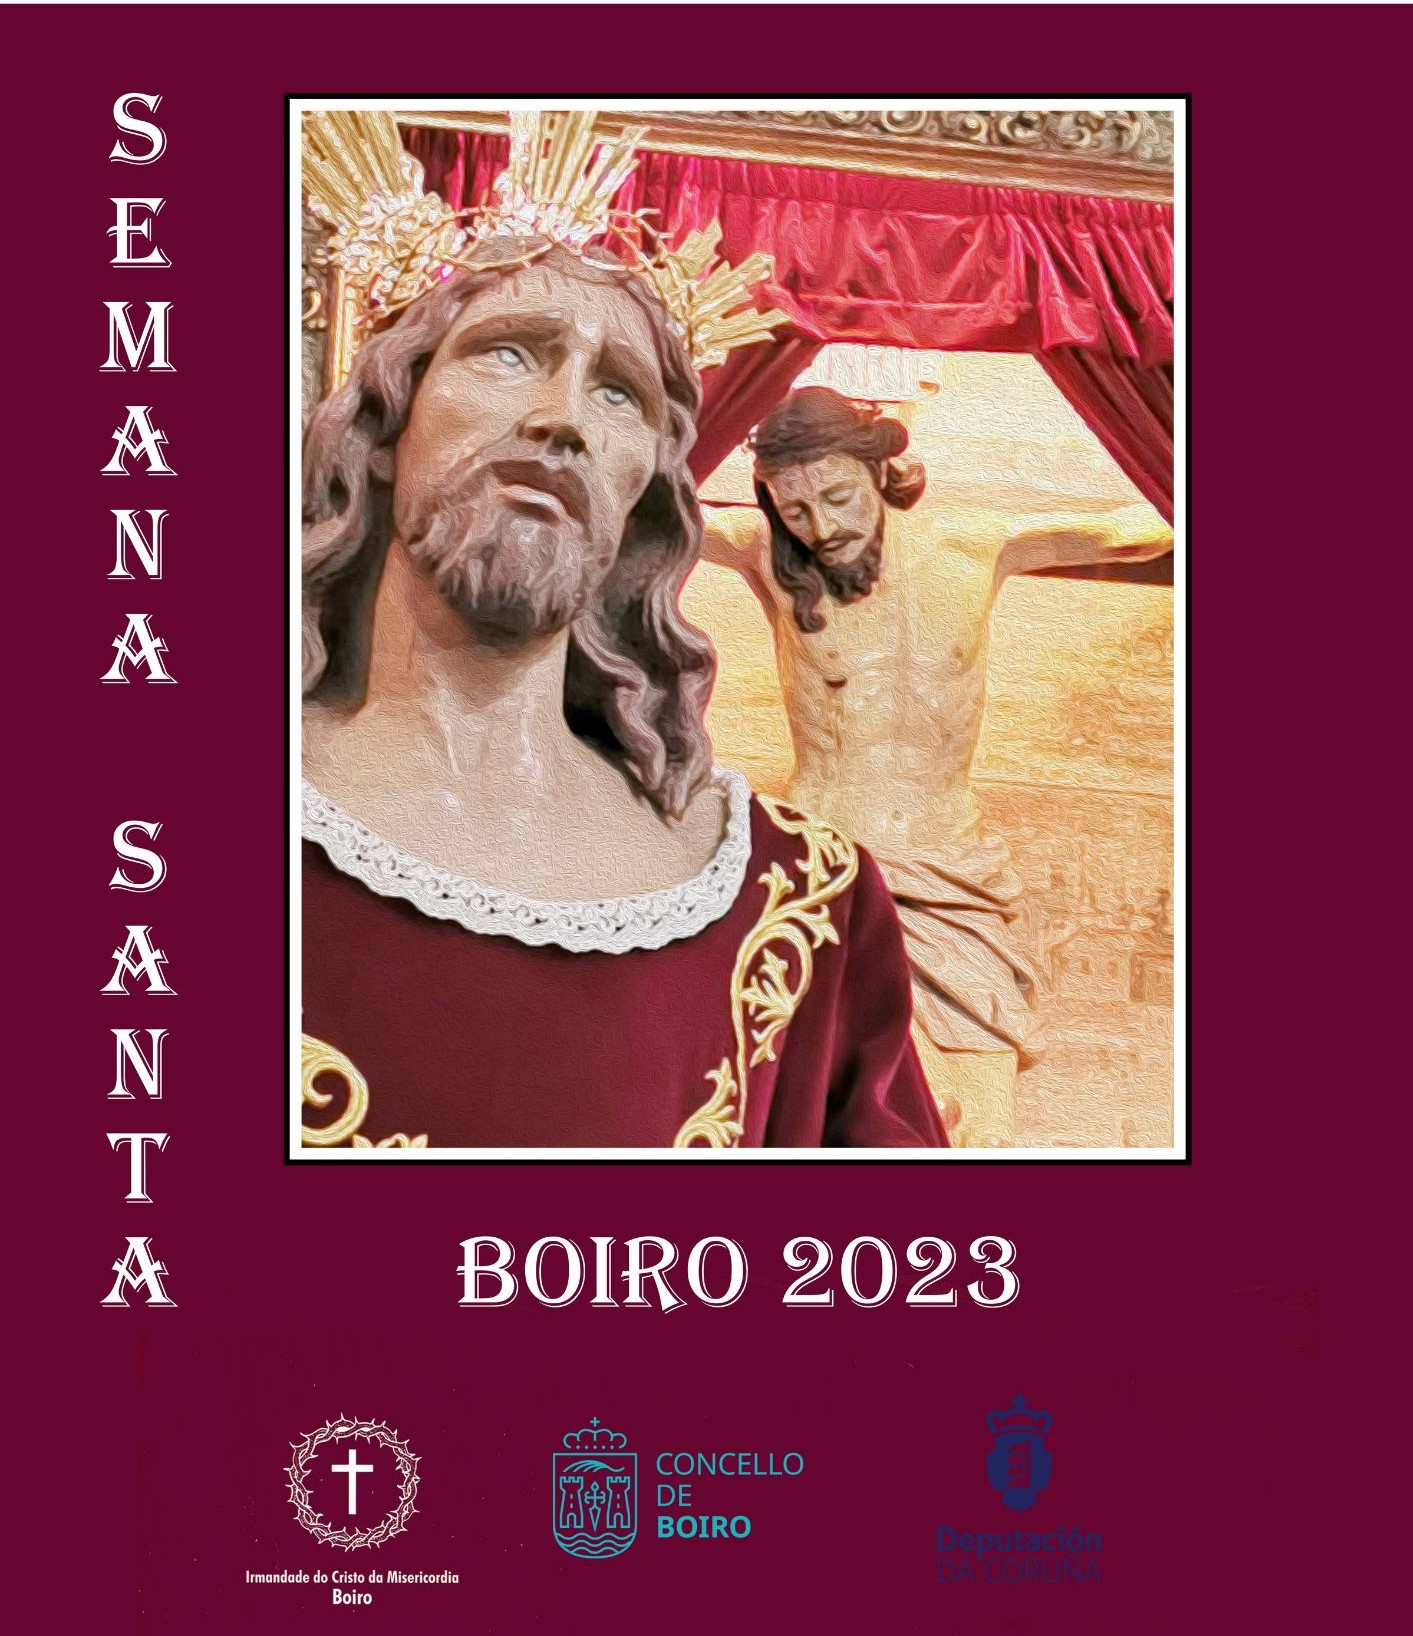 Semana Santa 2023 | Concello de Boiro